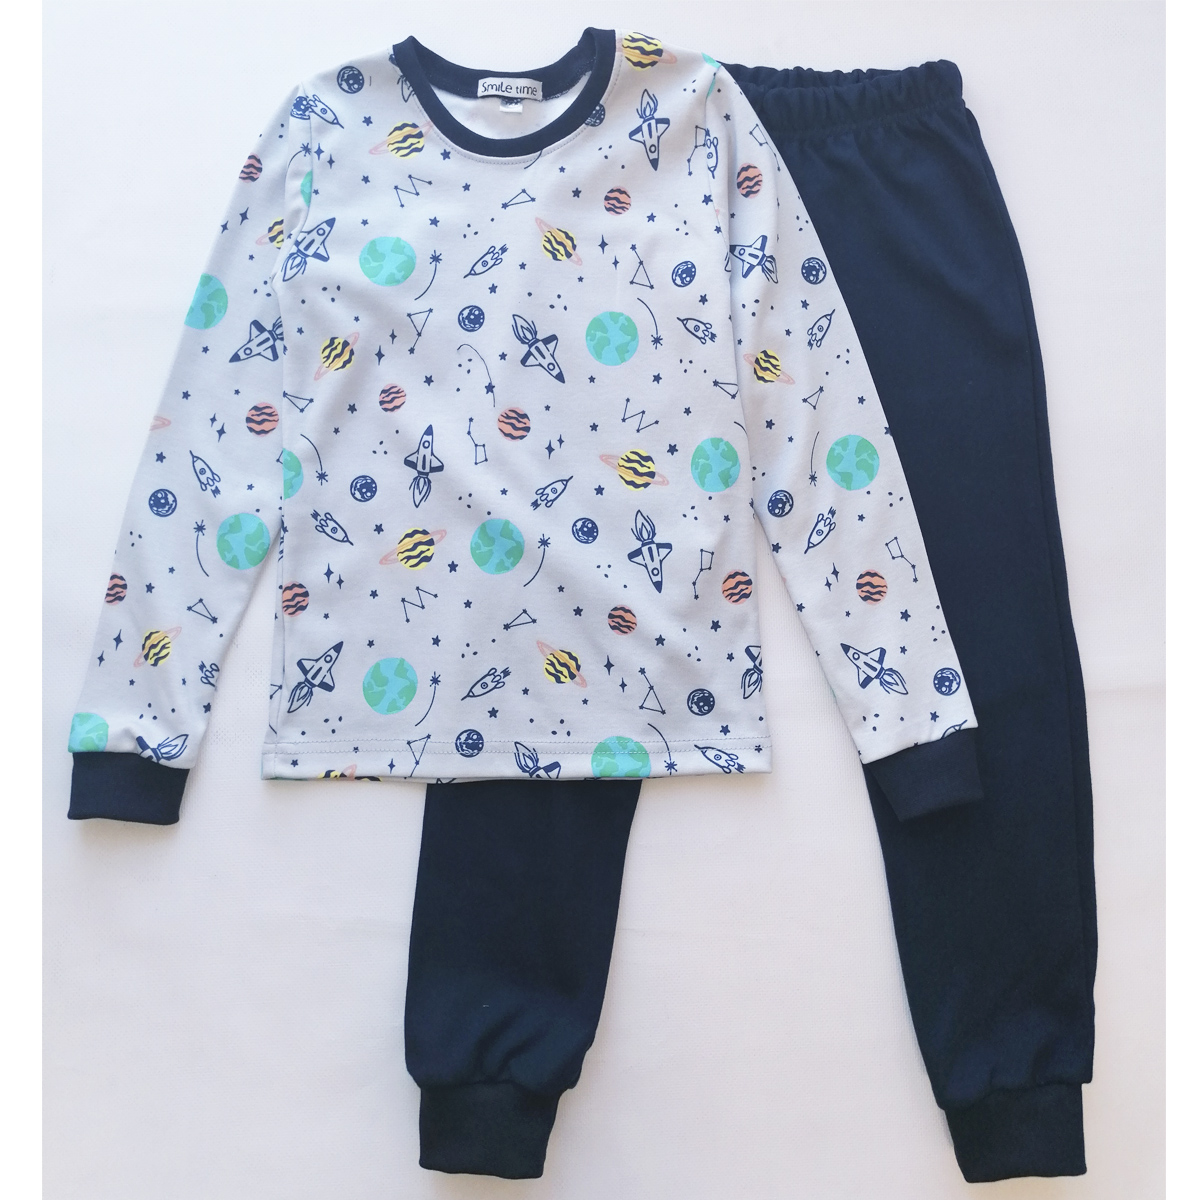 Пижама детская для мальчика, хлопковая, синяя, SmileTime Space